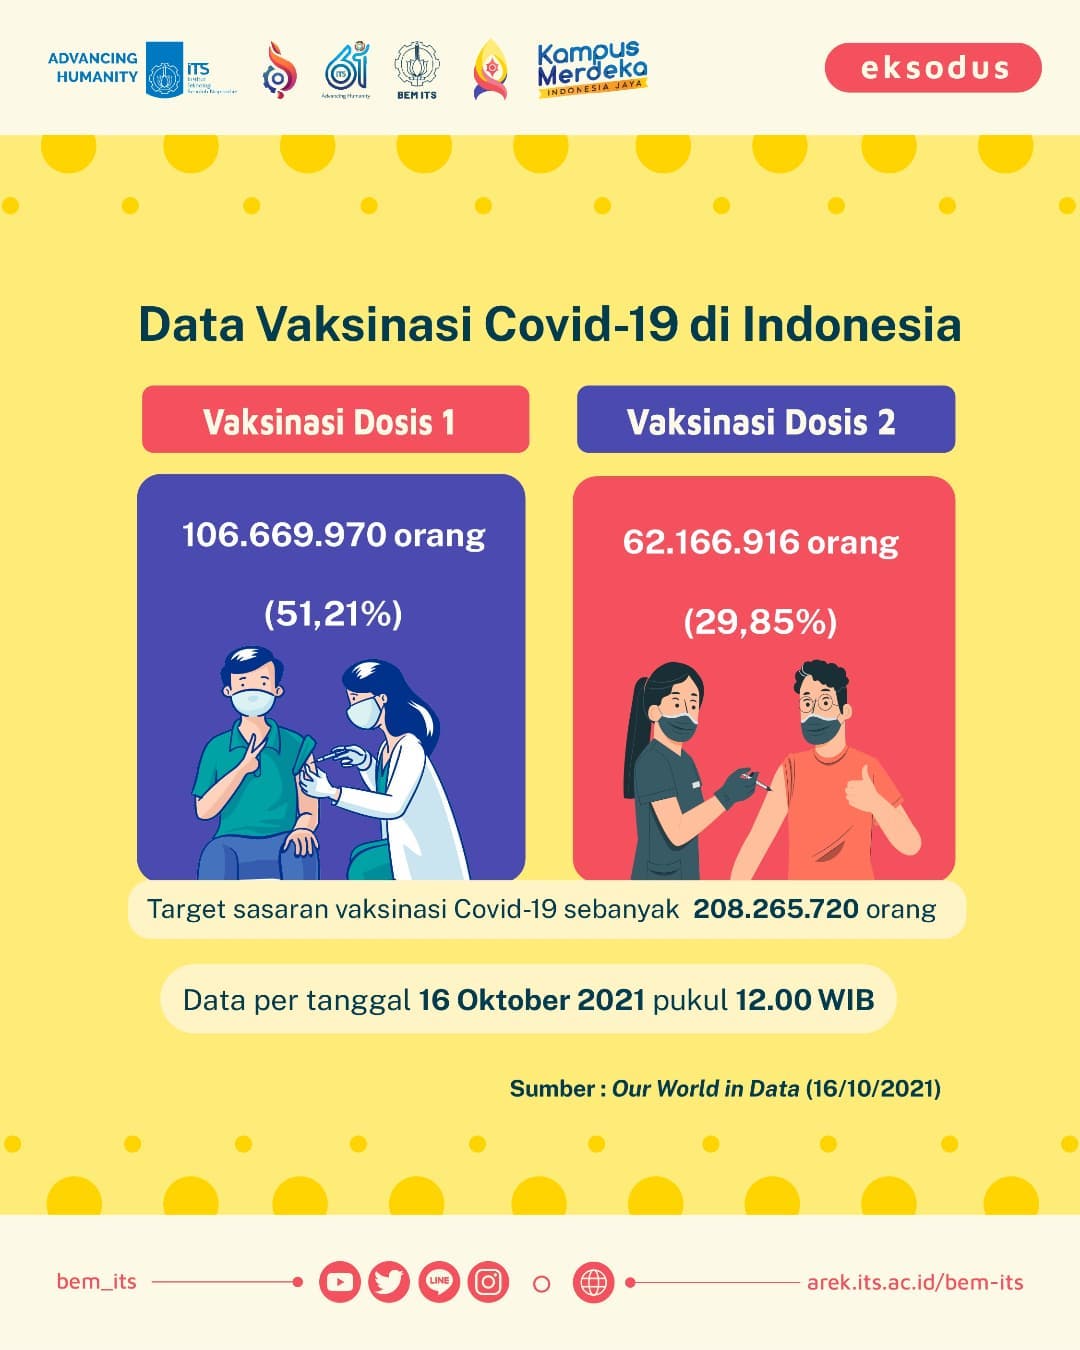 Postingan informasi mengenai data vaksinasi covid-19 di Indonesia